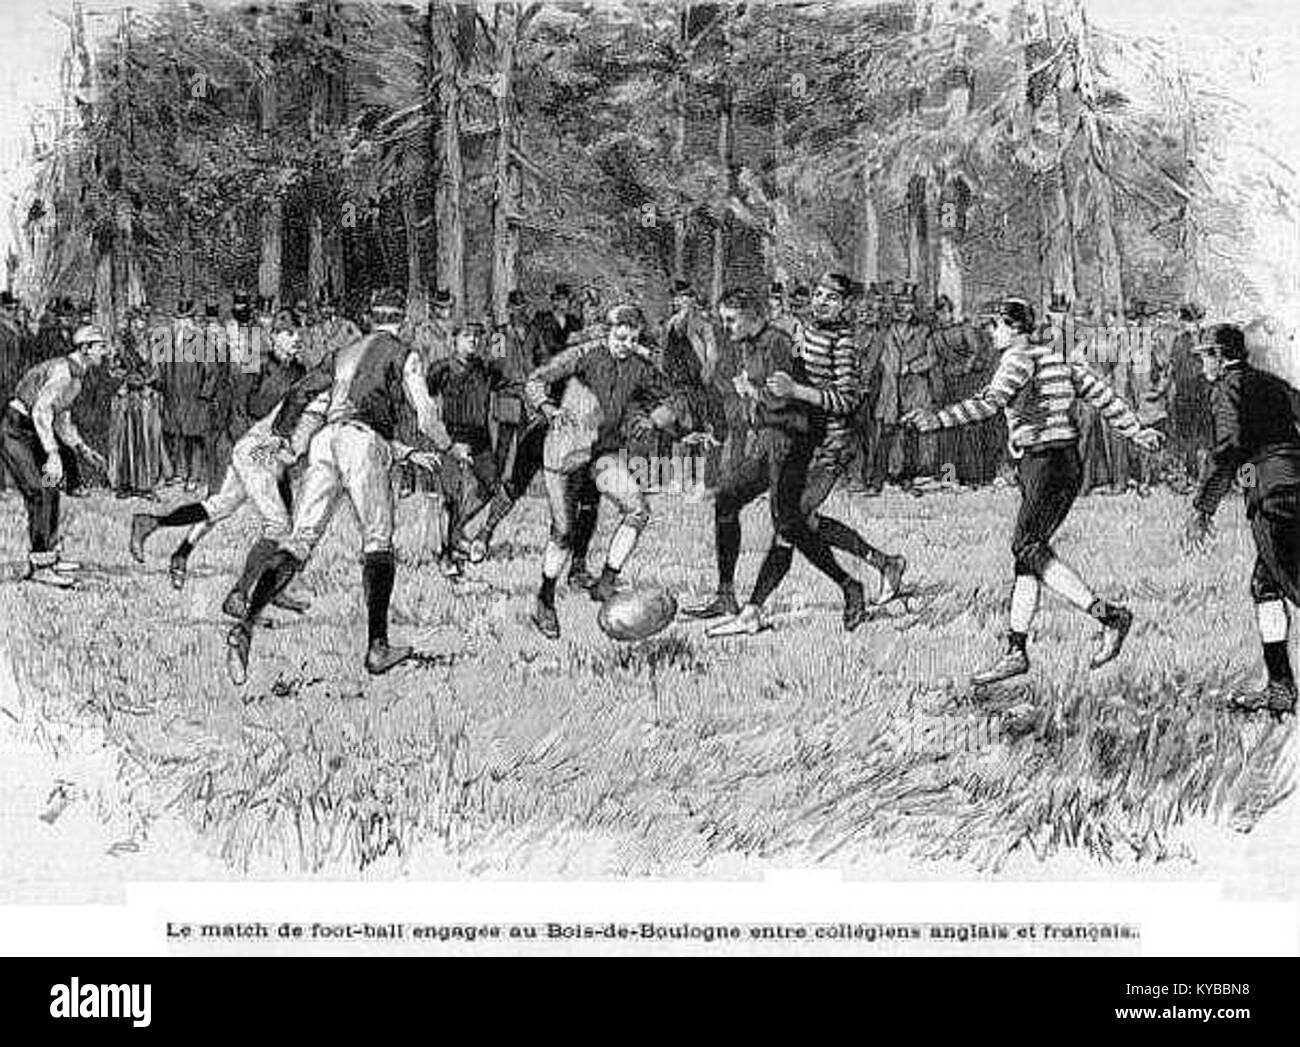 Match de foot-ball-rugby entre collégiens français et anglais, disputé au bois de Boulogne en mars 1890 Stock Photo